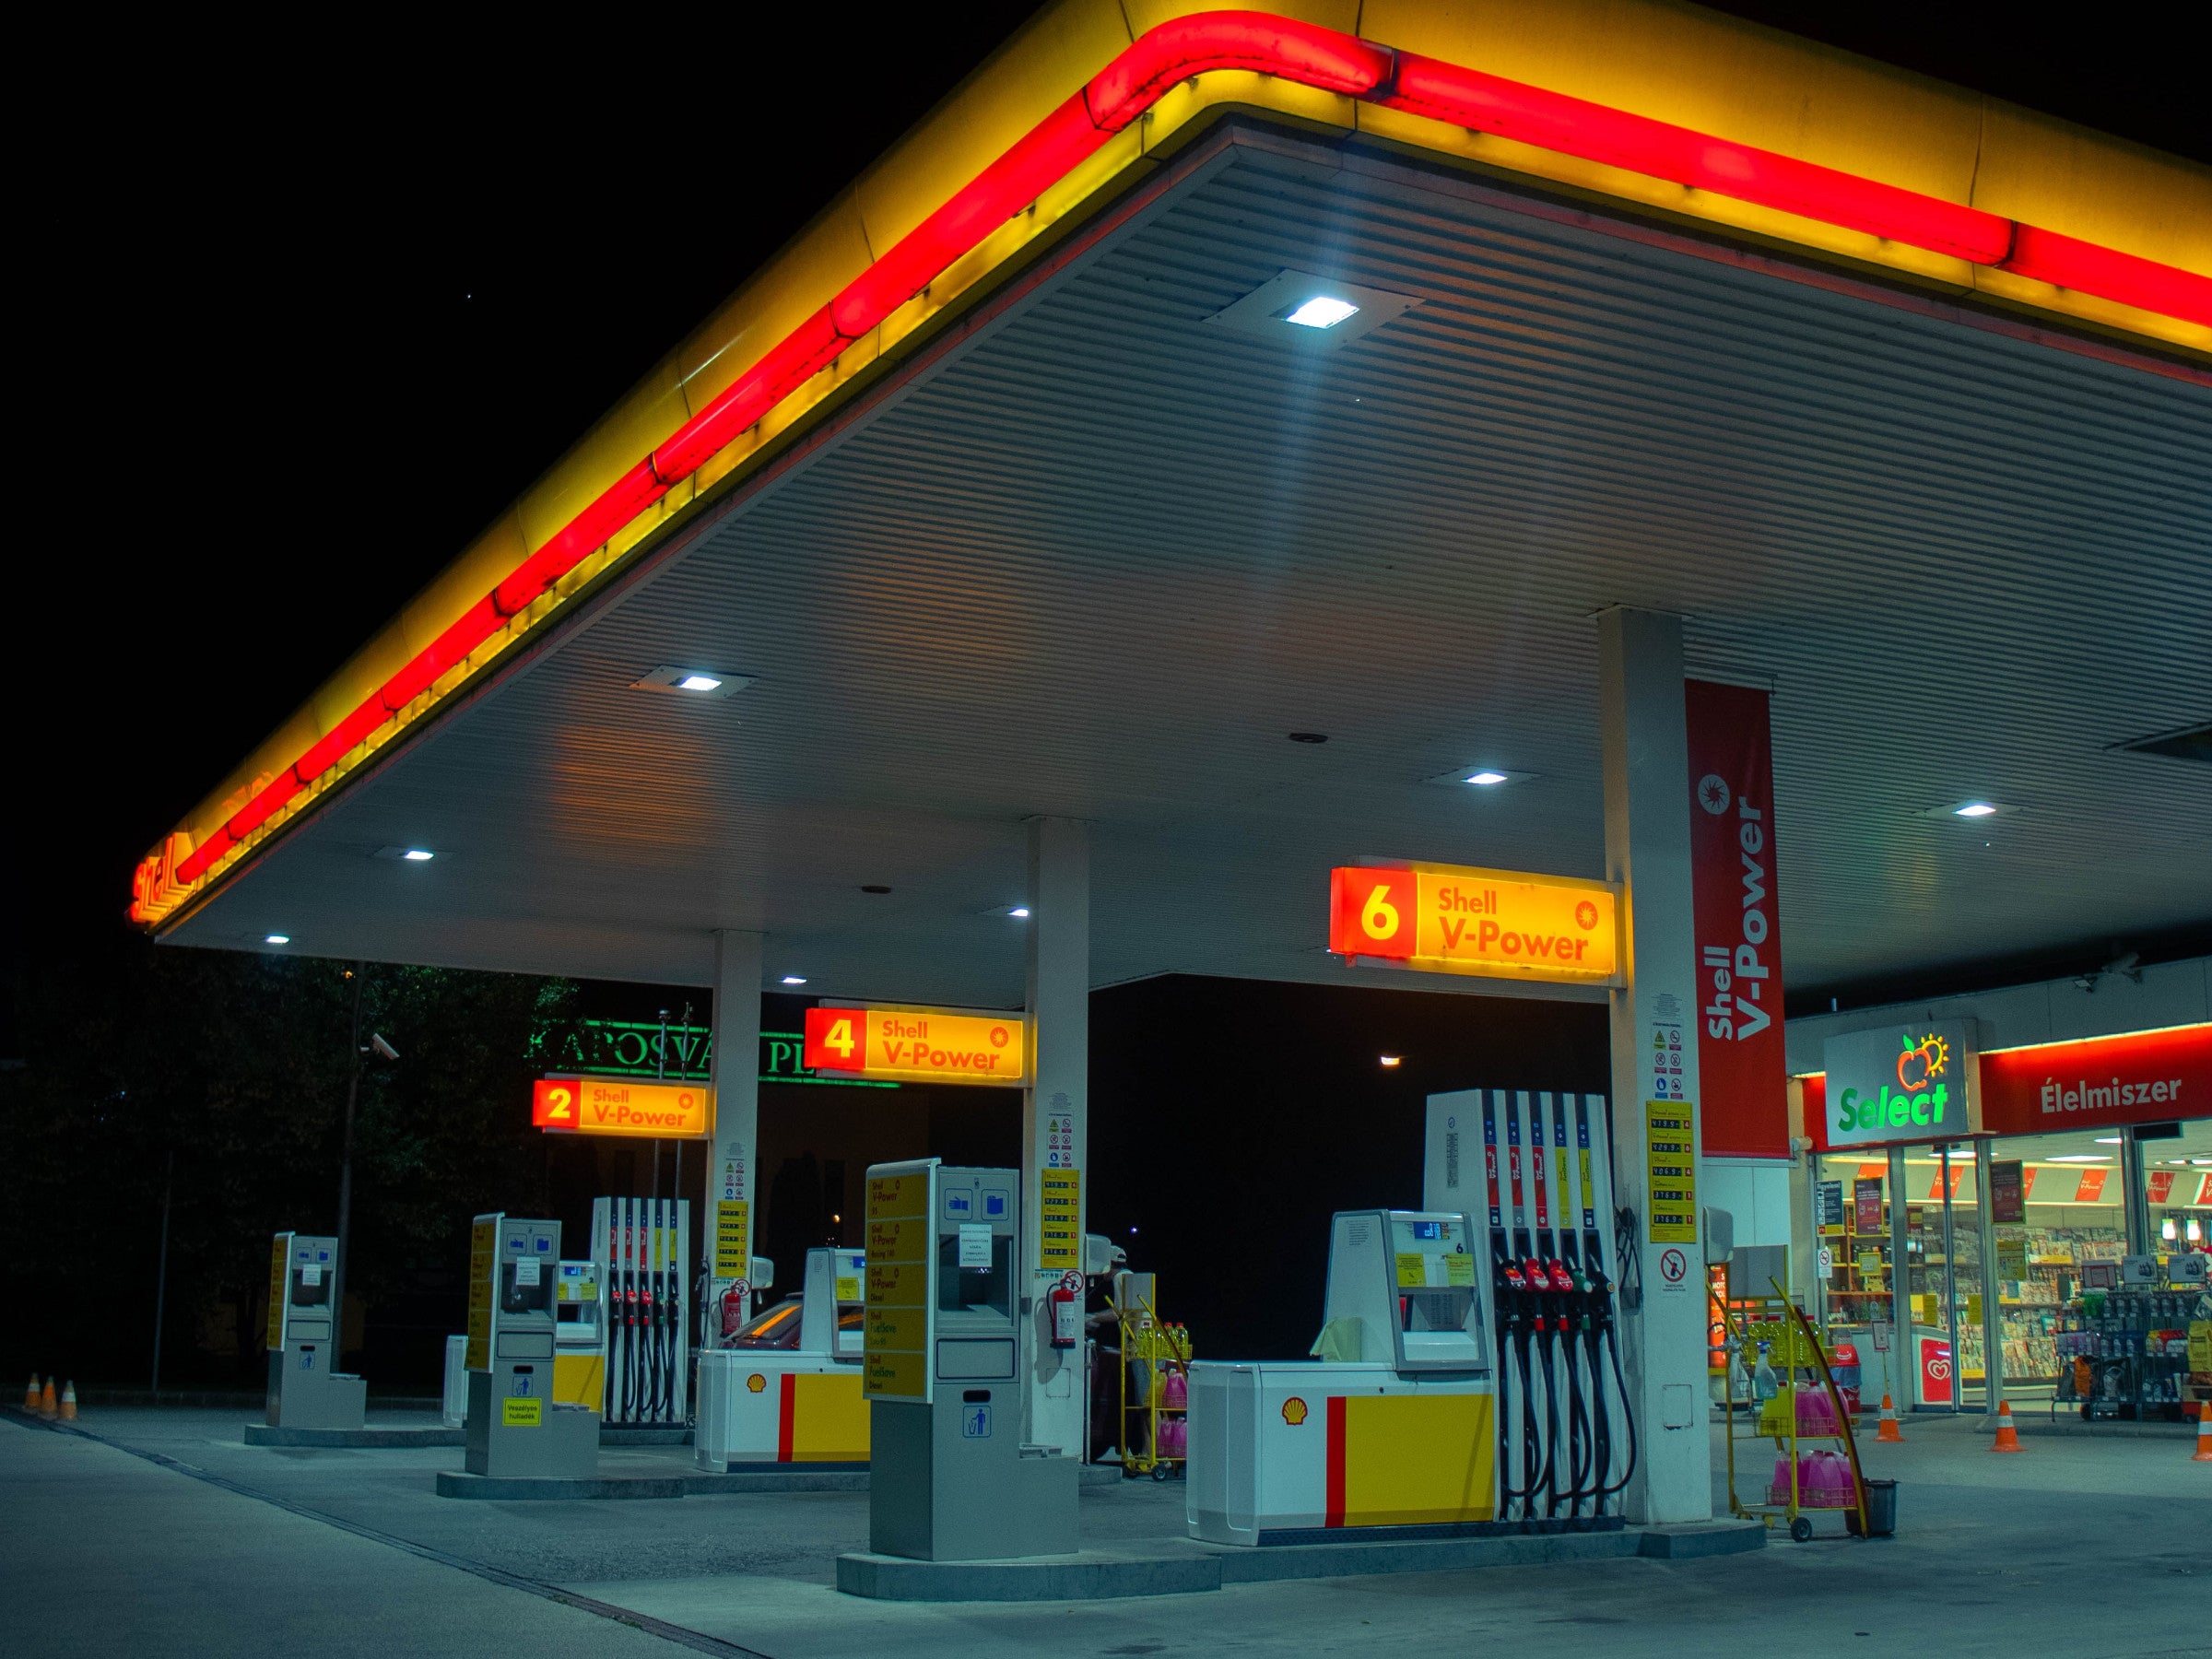 #Benzin-Experte prophezeit: Horror-Preise und Tankstellen ohne Sprit werden Realität